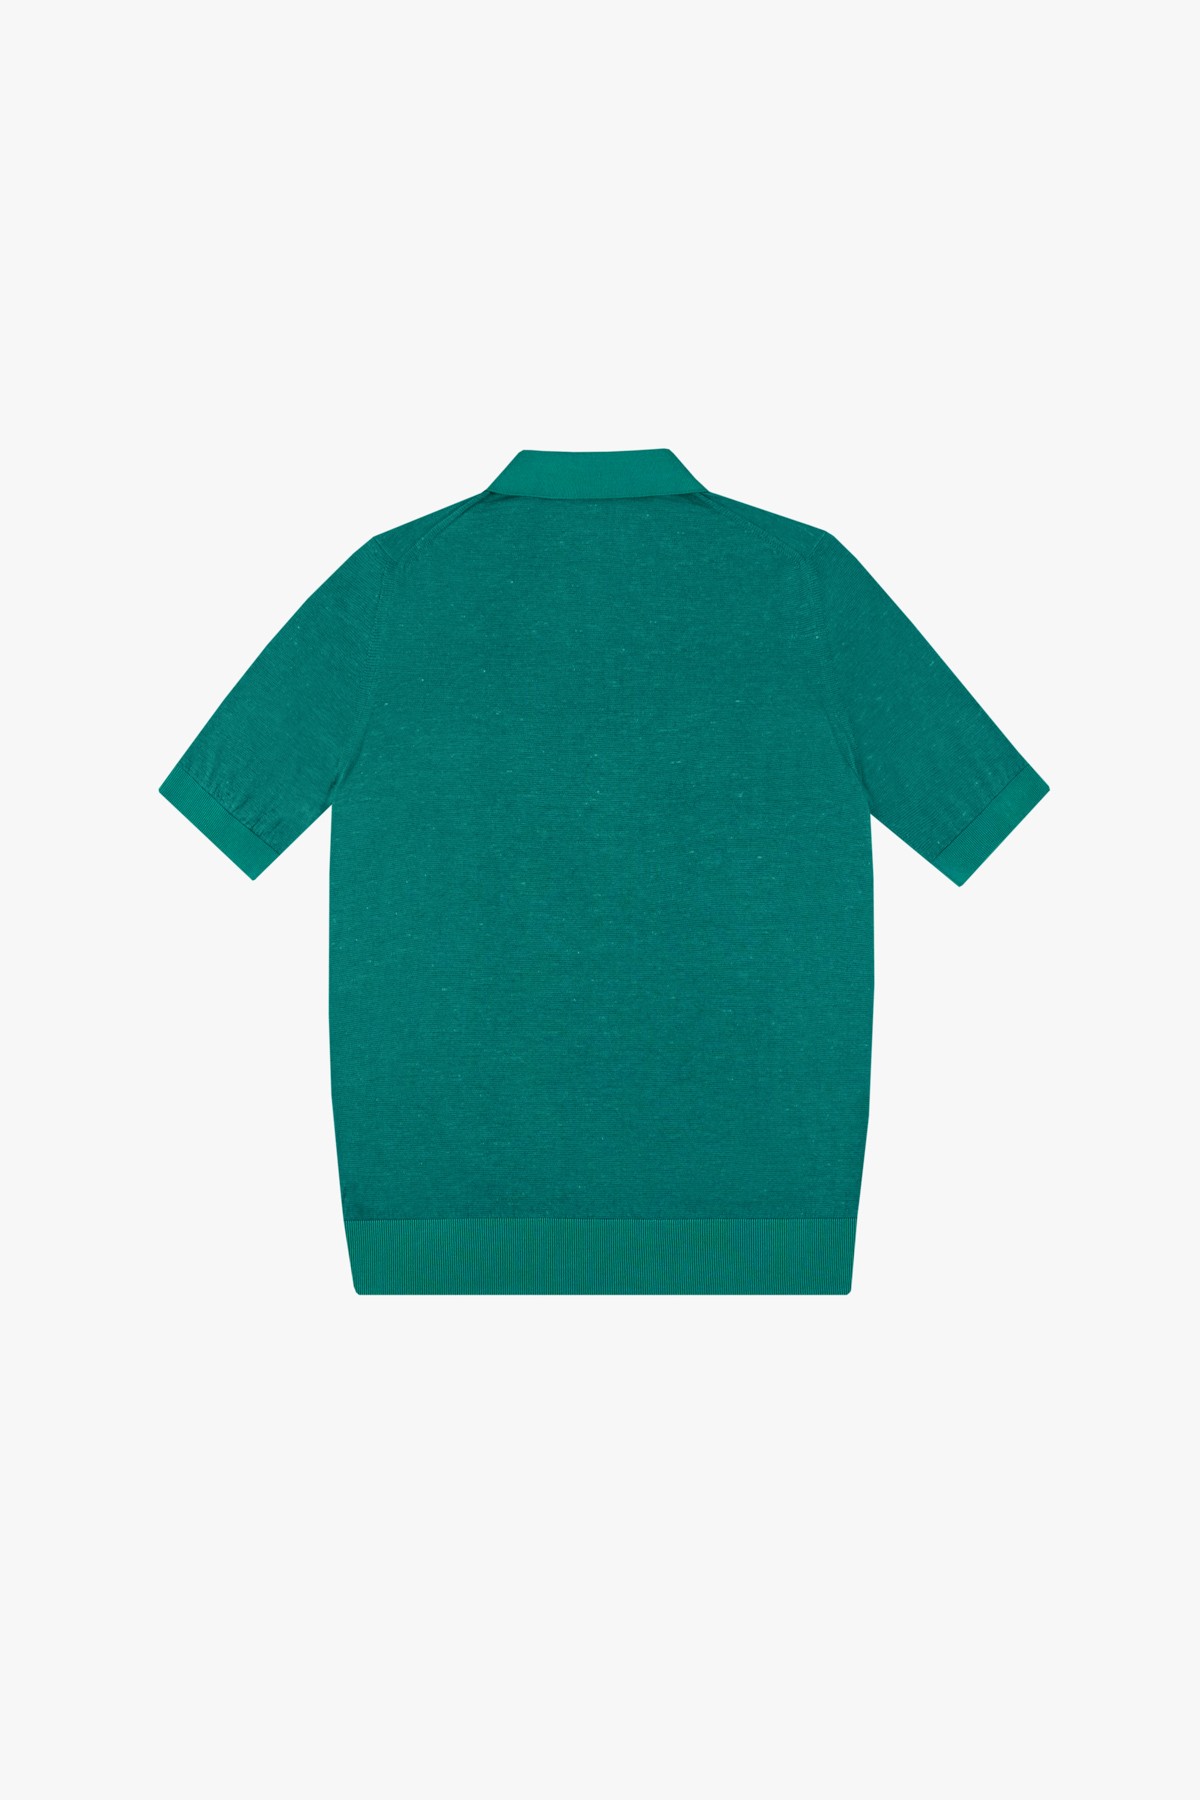 Emerald green zipped polo shirt